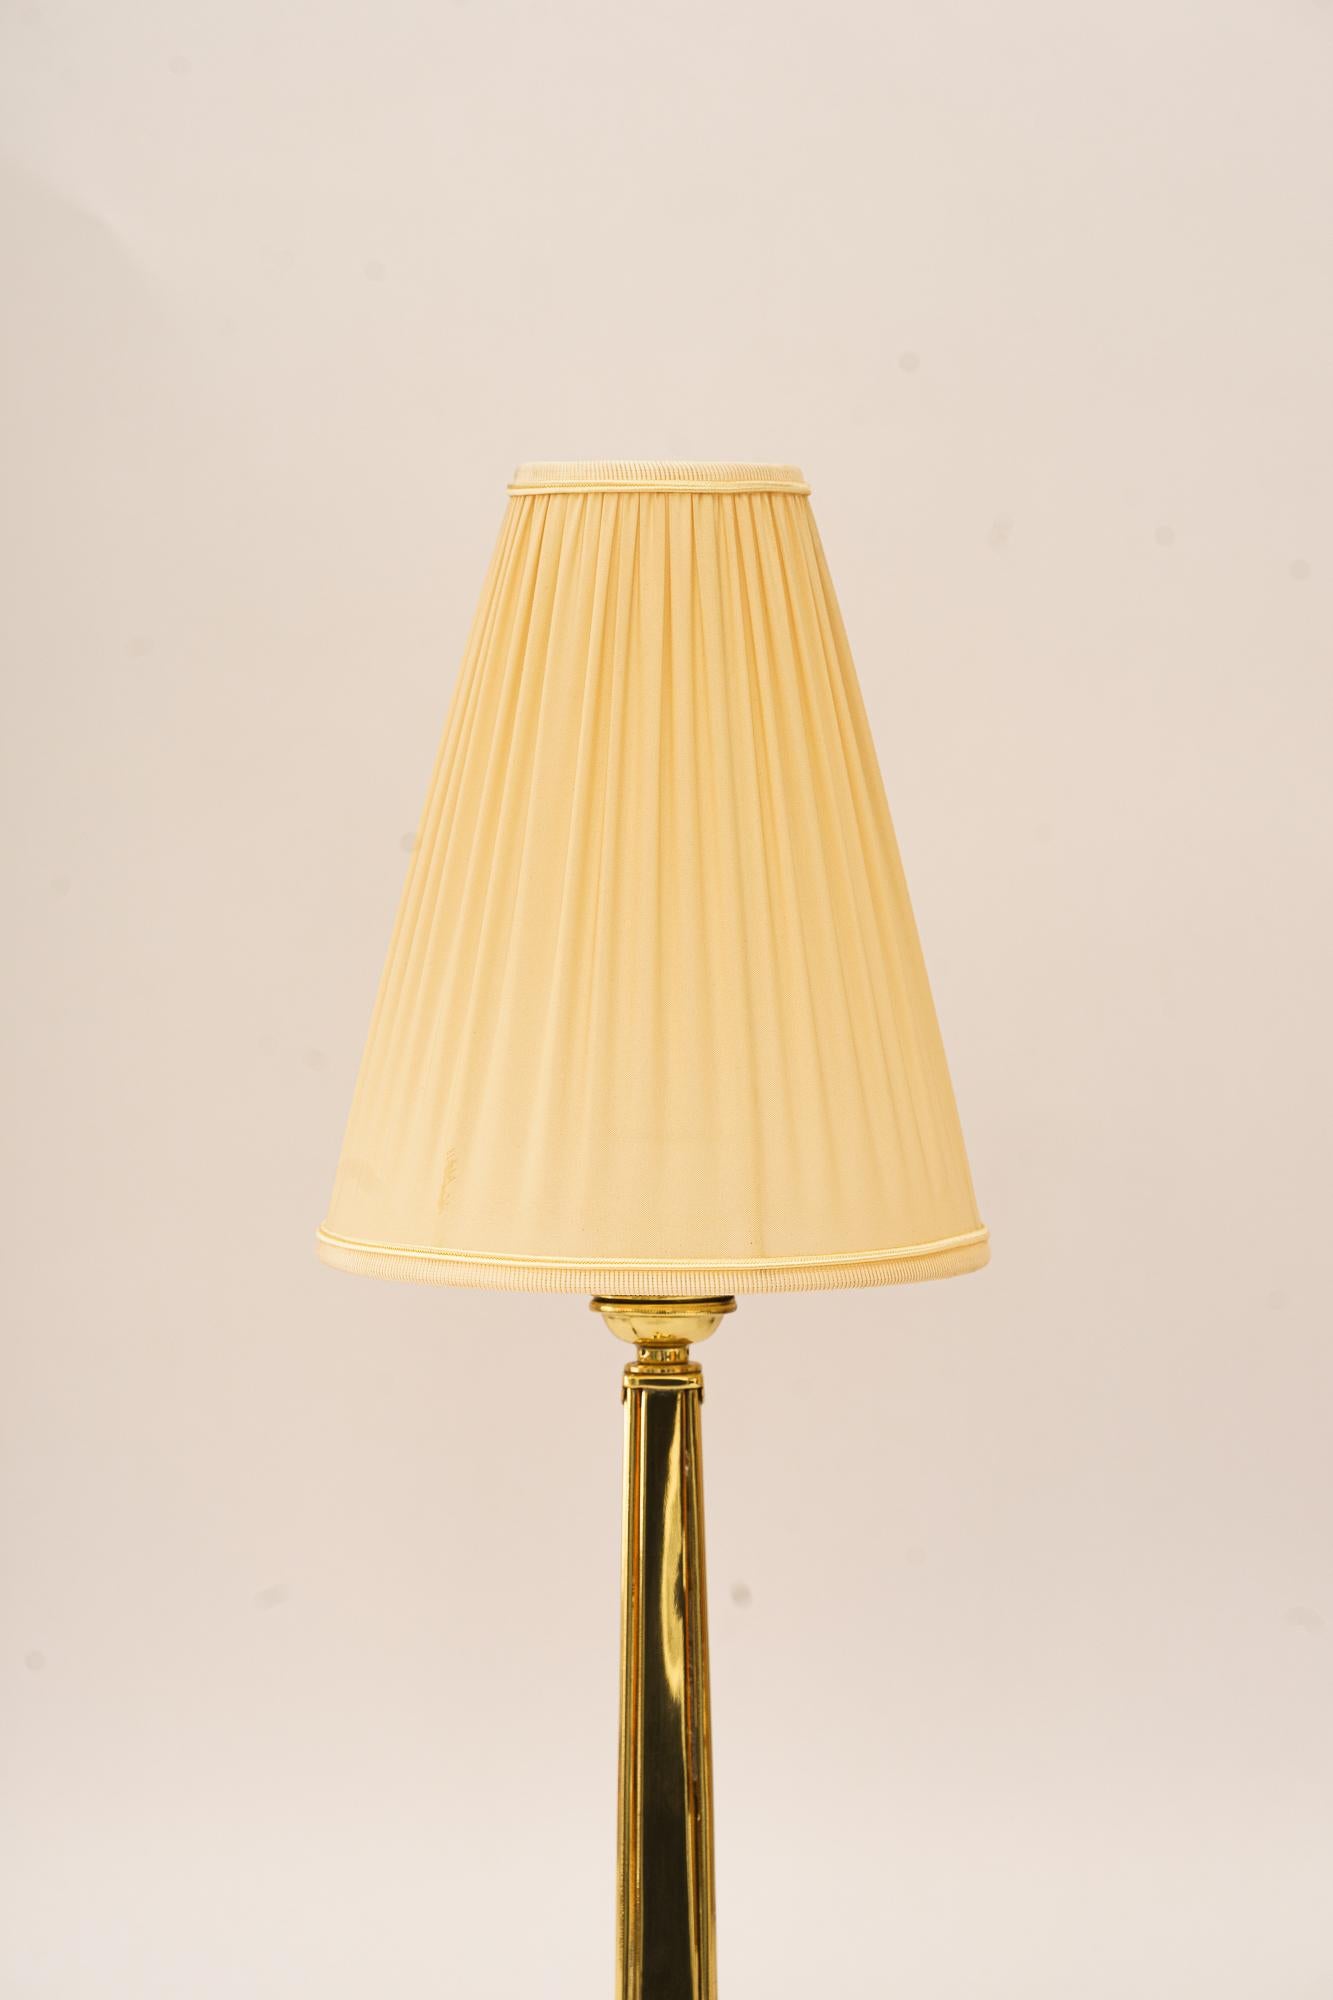 Art Deco Tischlampe mit Stoffschirm wien um 1920
Messing poliert und emailliert
Der Stoffschirm wird ersetzt ( neu )
